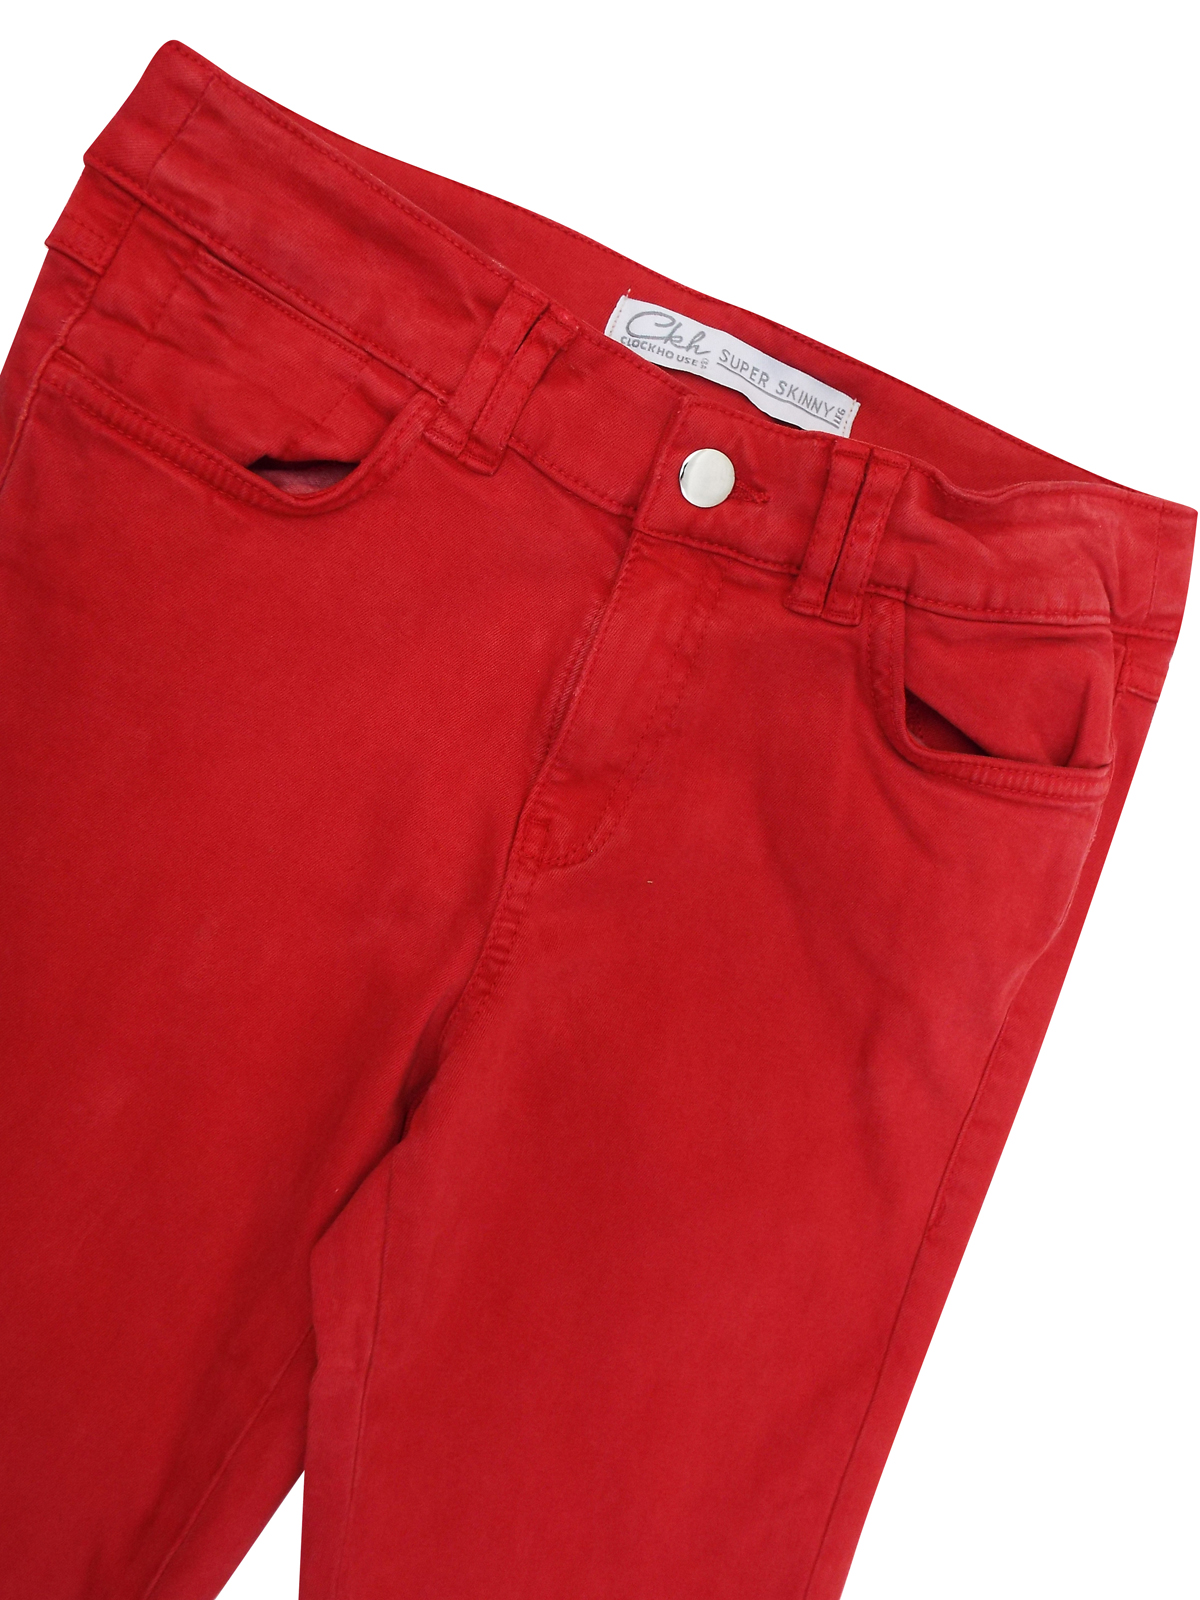 Clockhouse RED 5-Pocket Super Skinny Denim Jeans - Size 8 to 16